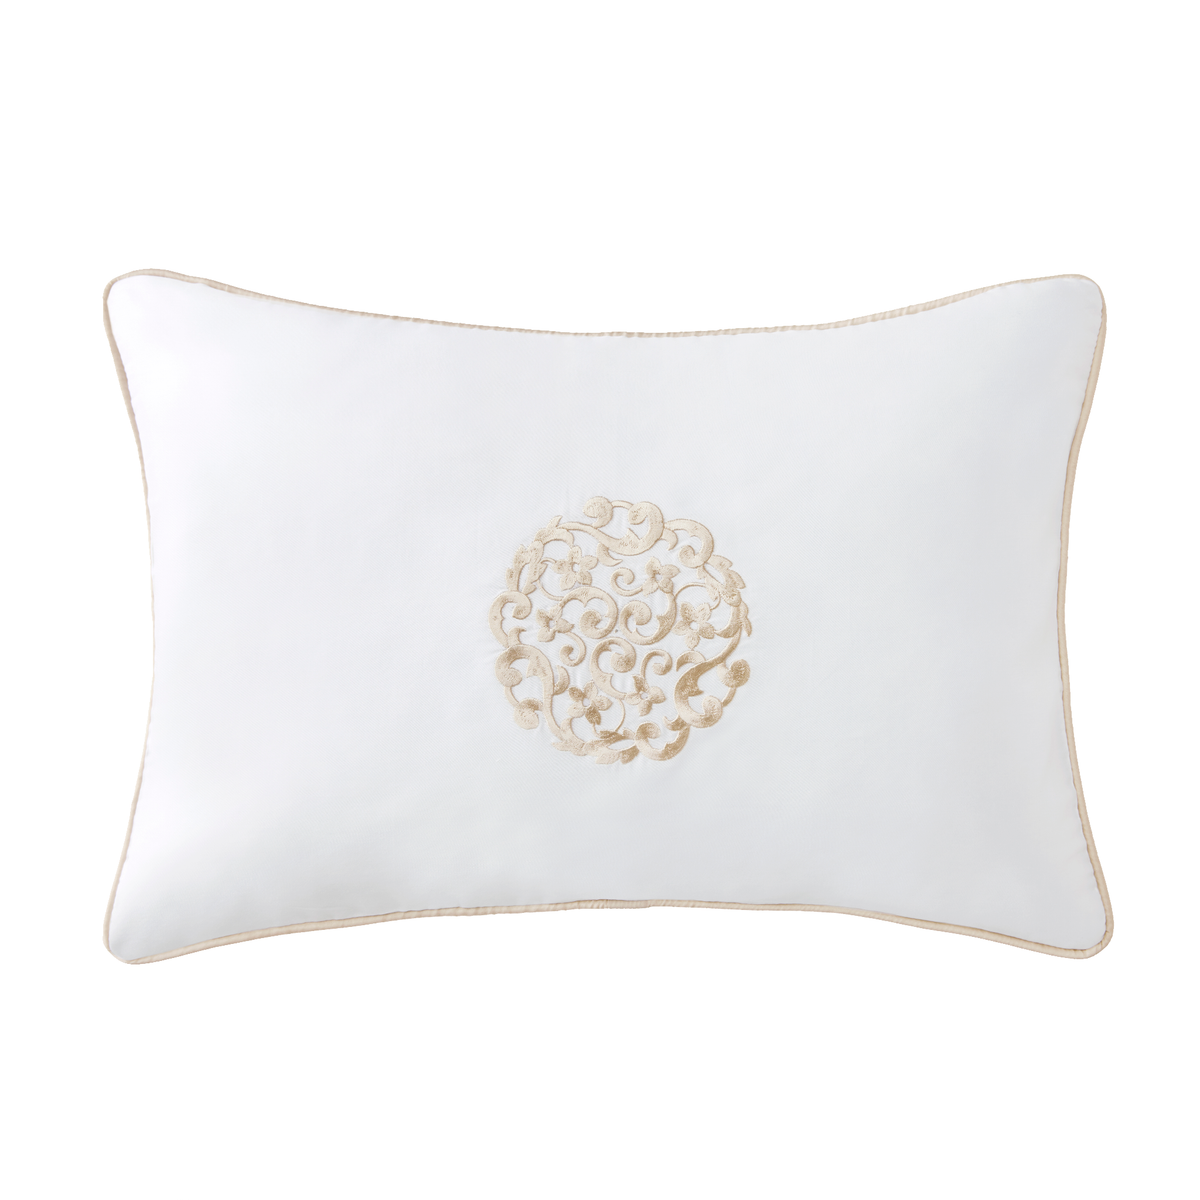 Silo Image of Sferra Storia Decorative Pillow in White/Sand Color